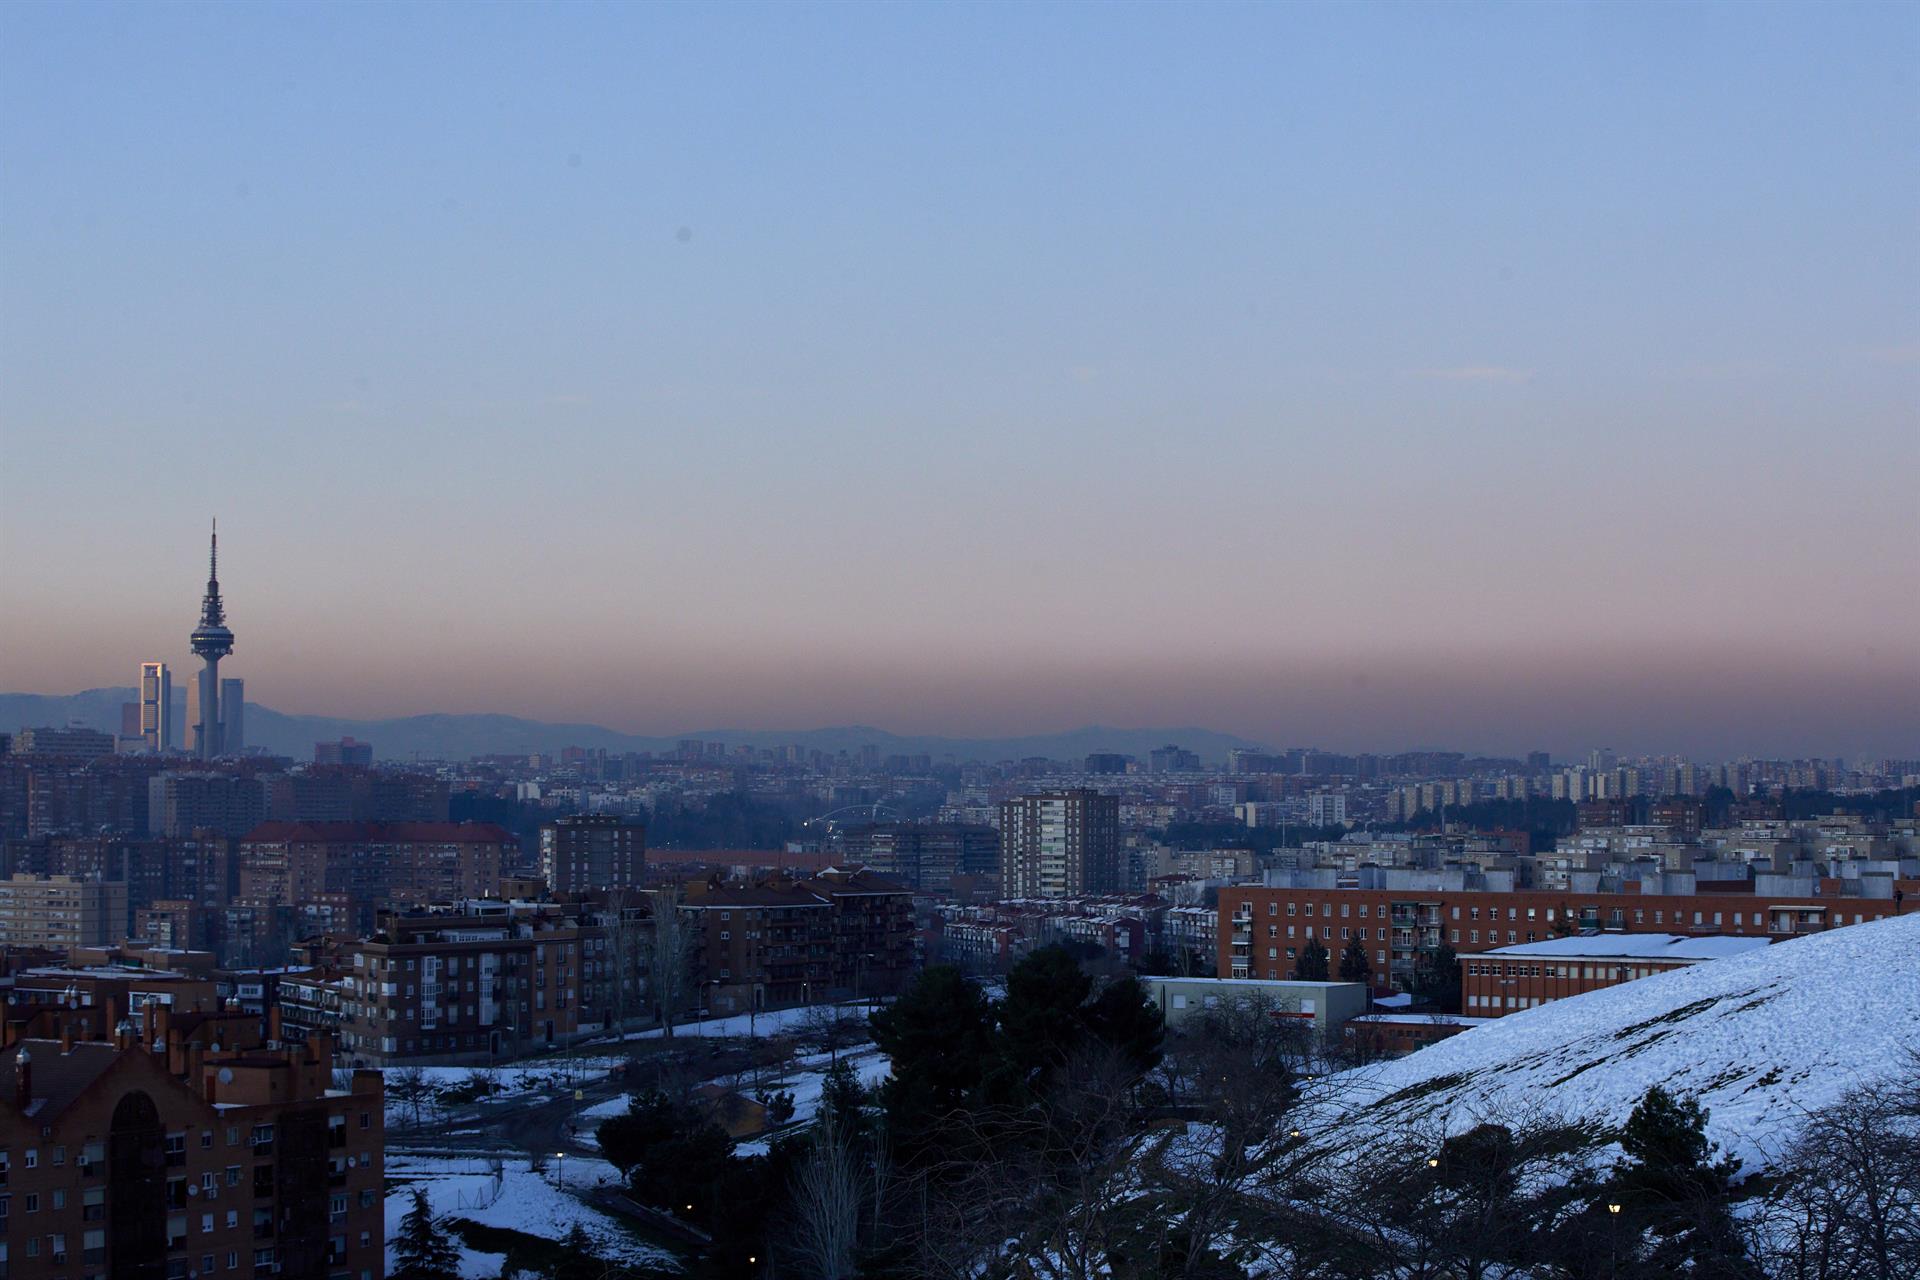 Capa de contaminación sobre la ciudad de Madrid, a 18 de enero de 2021 / Foto: EP